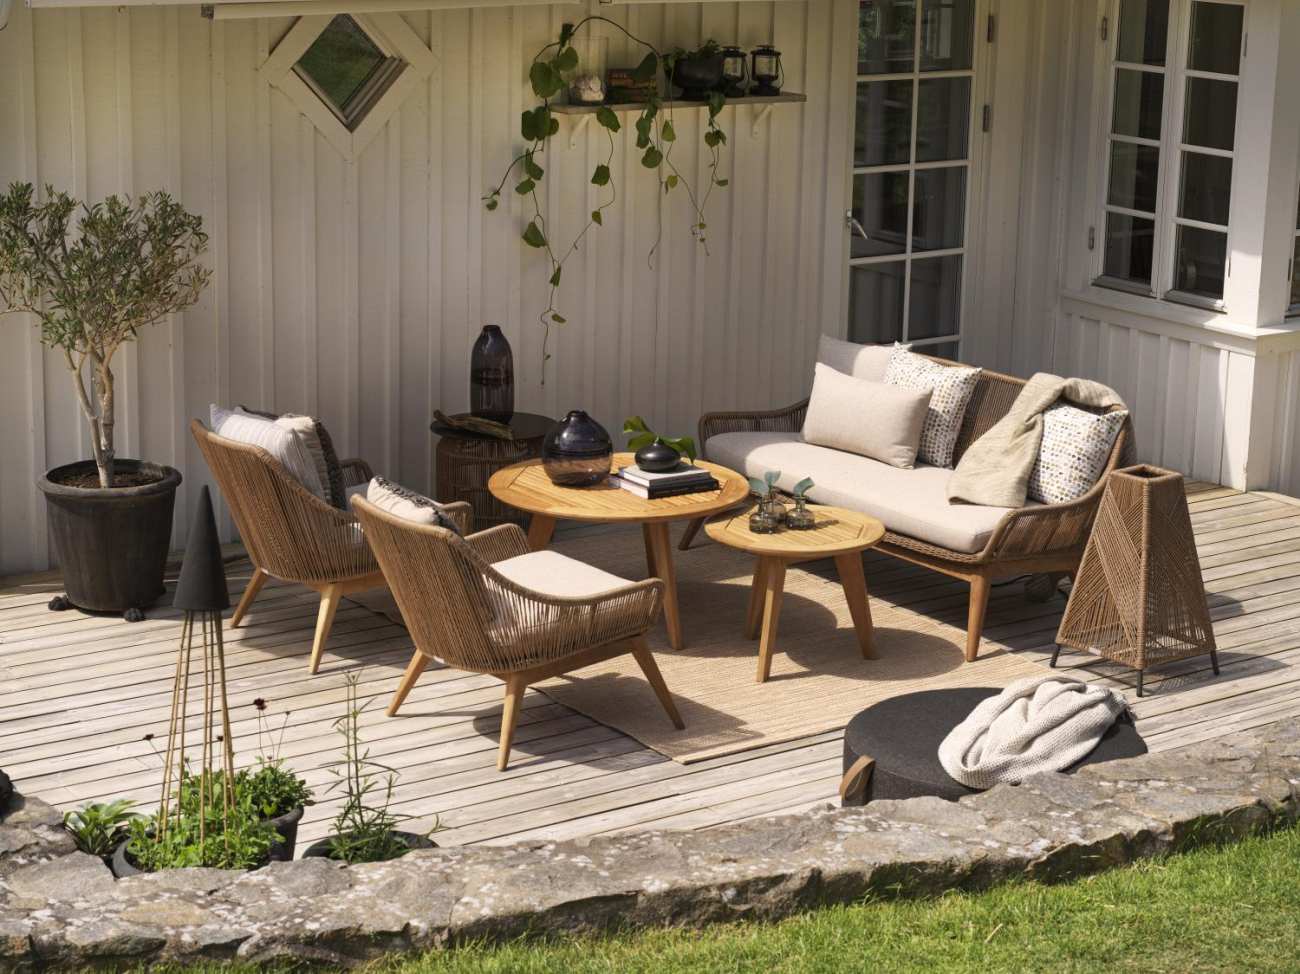 Das Gartensofa Hassel überzeugt mit seinem modernen Design. Gefertigt wurde er aus Rattan, welches einen braunen Farbton besitzt. Das Gestell ist aus Teakholz und hat eine natürliche Farbe. Die Sitzhöhe des Sofas beträgt 47 cm.